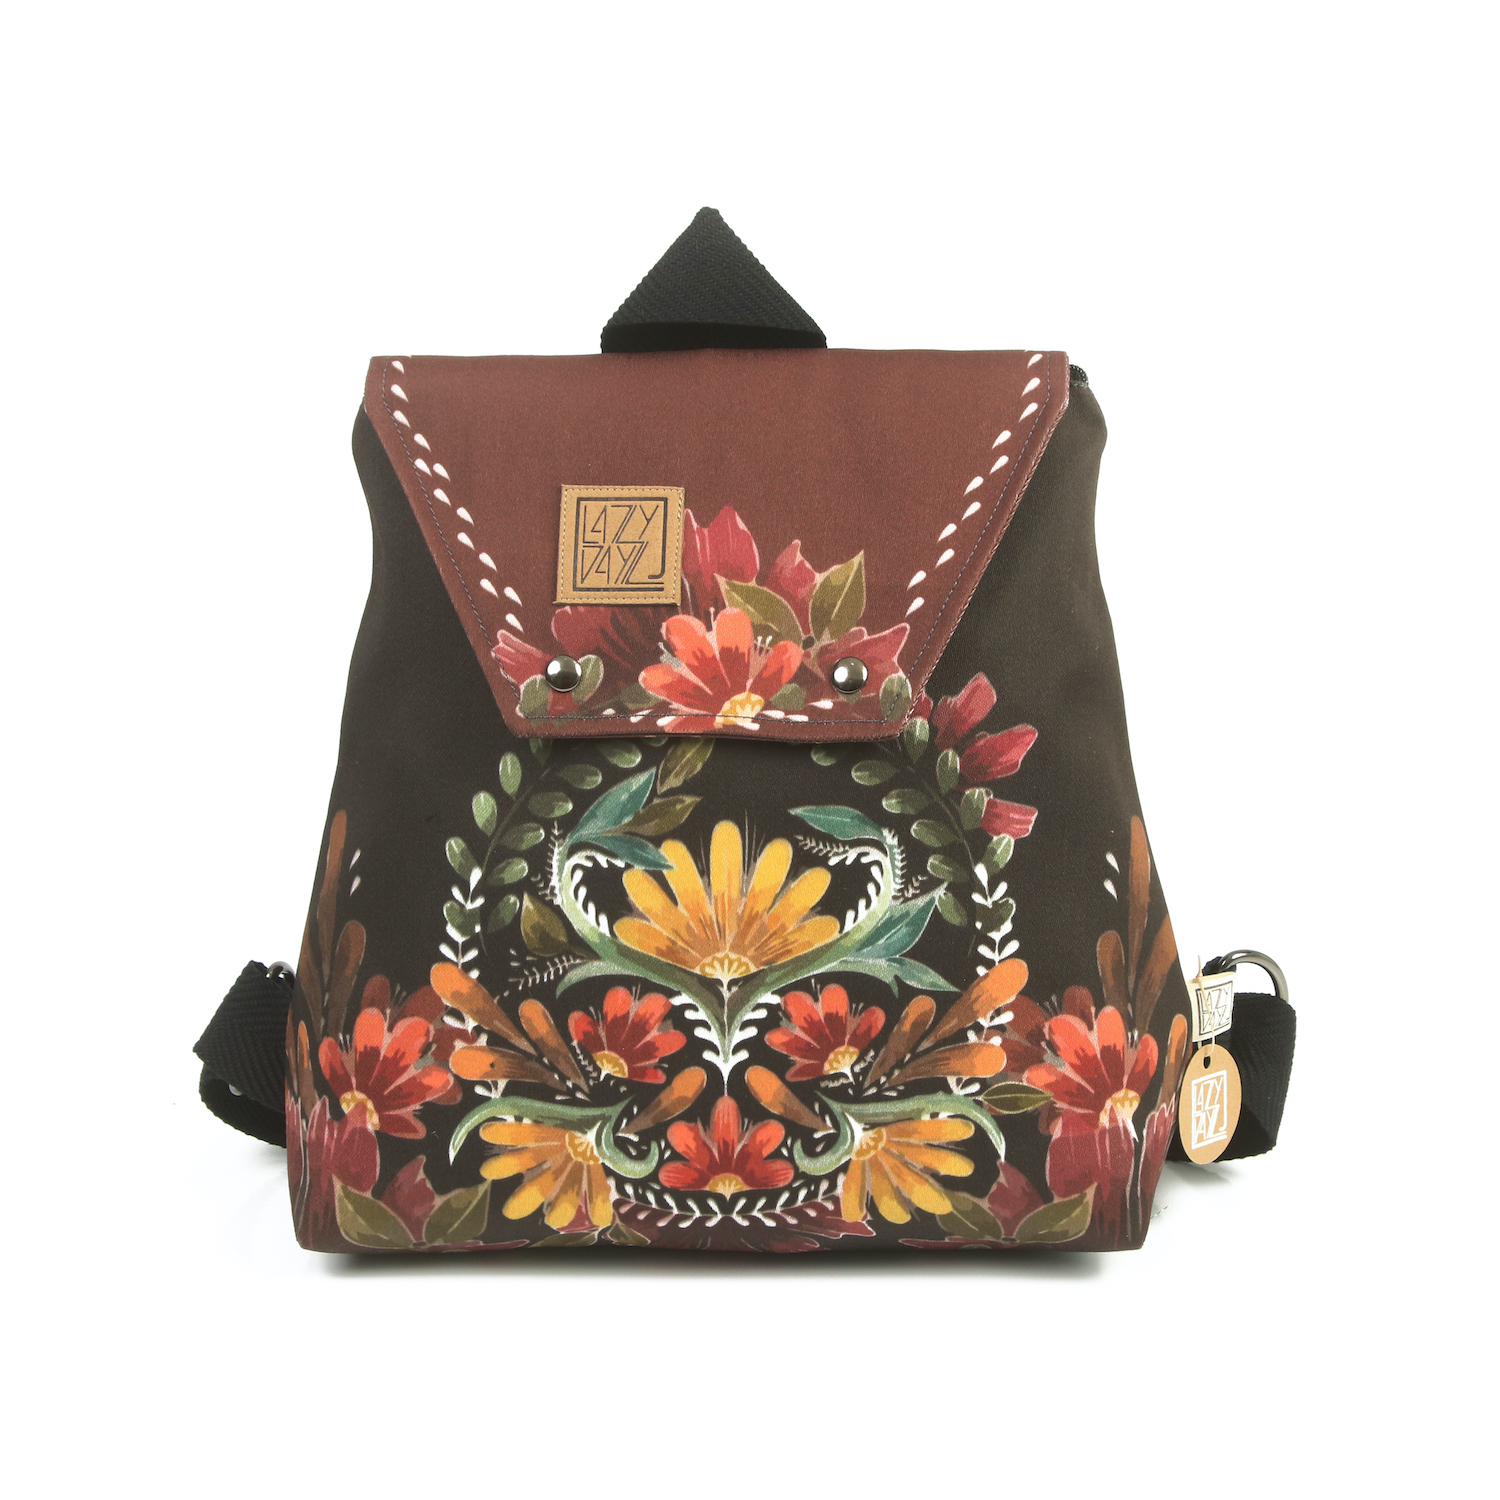 LazyDayz-Designs-Backpack-γυναικείος-σάκος-πλάτης-χειροποίητος bb0301